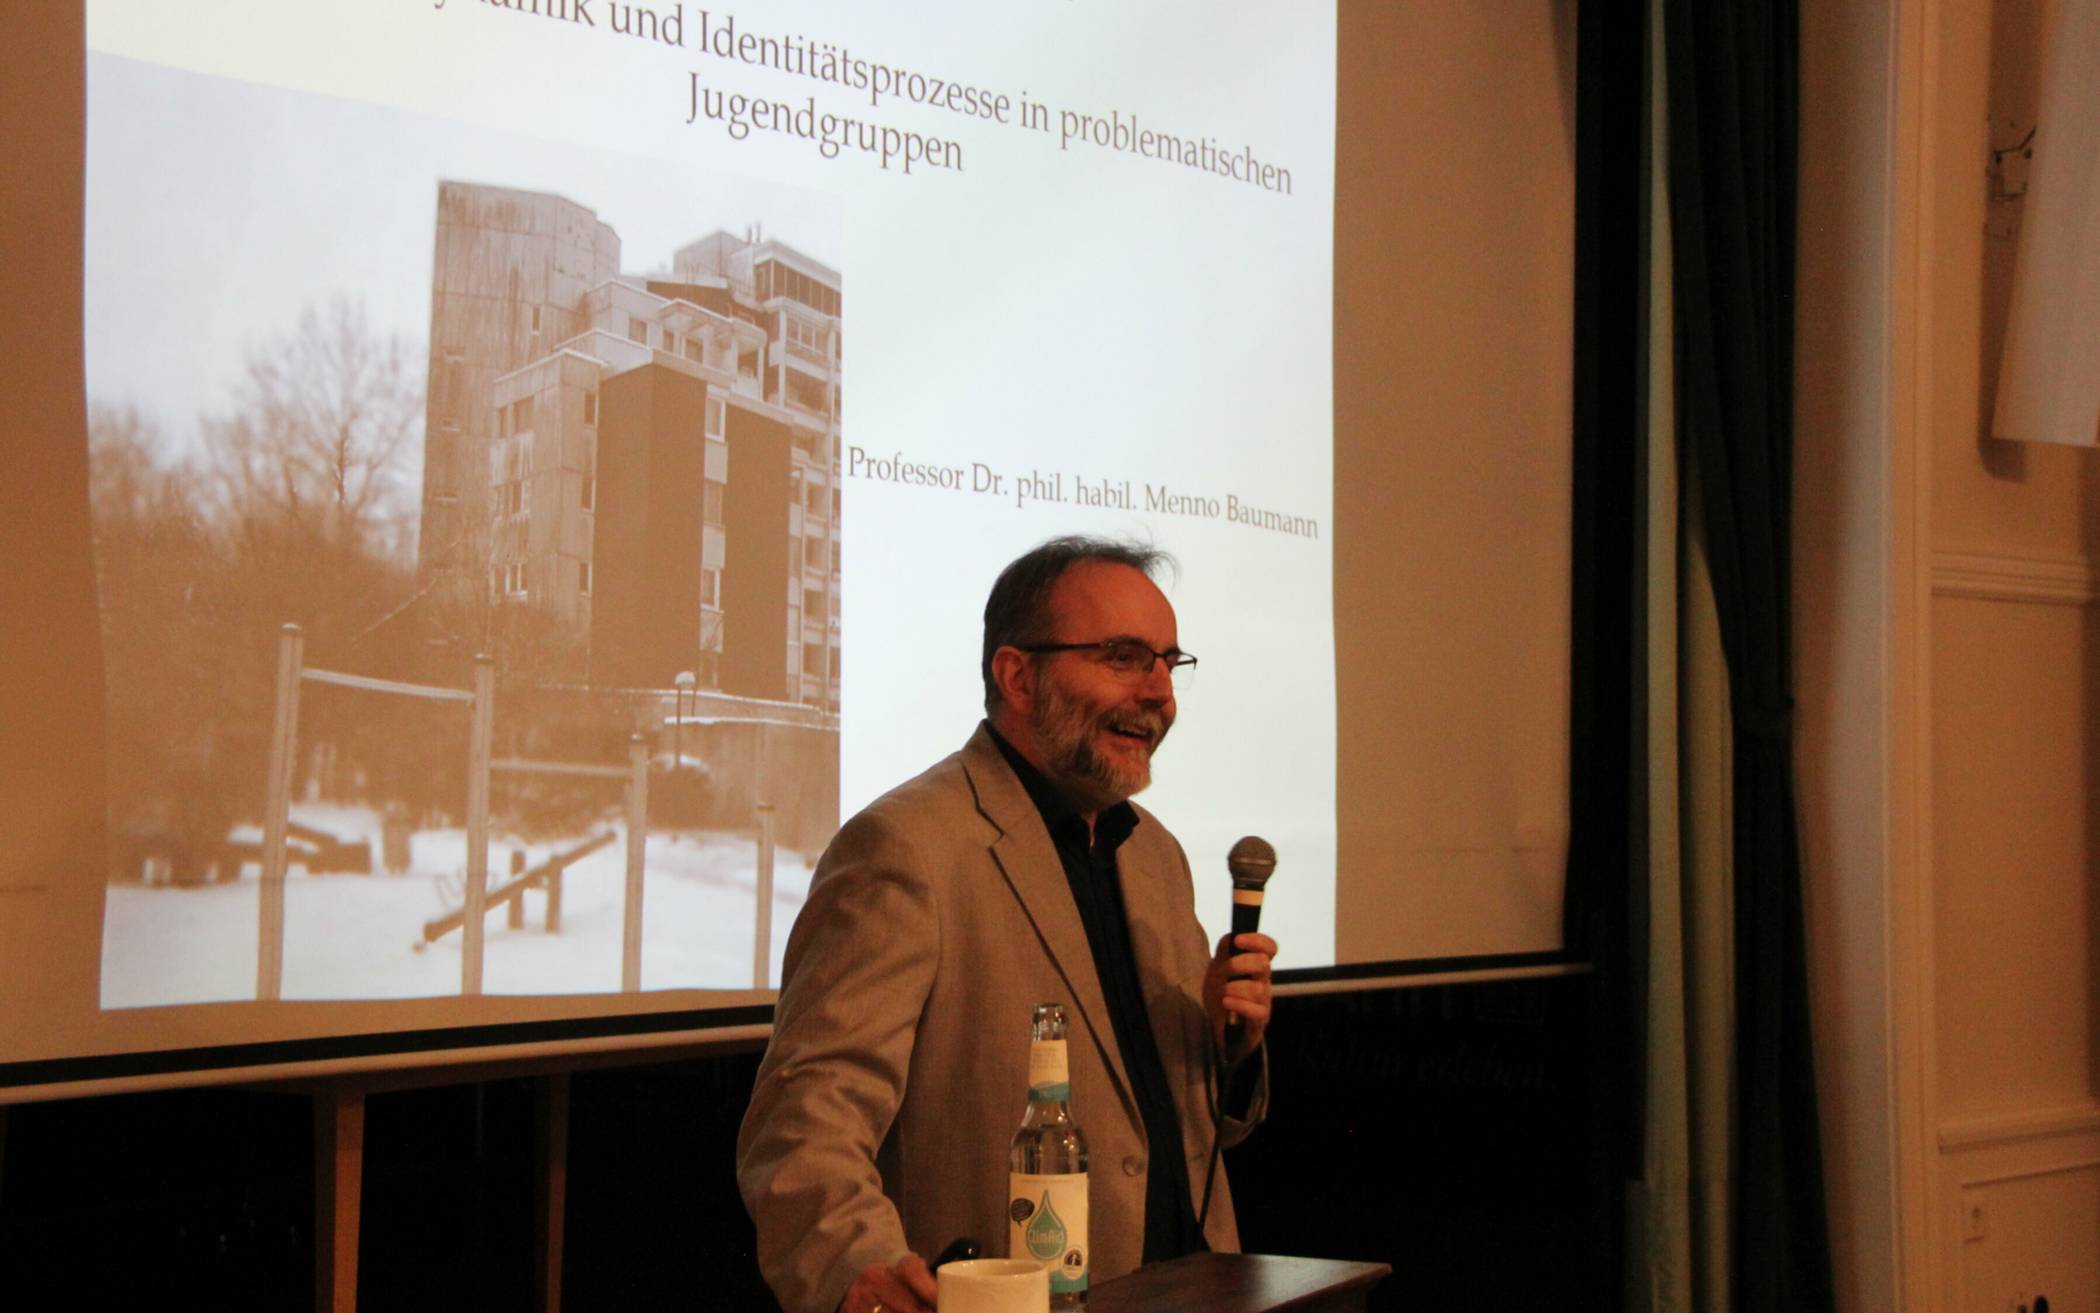  Prof. Baumann während seines Vortrages in der Kulturvilla Mettmann. 